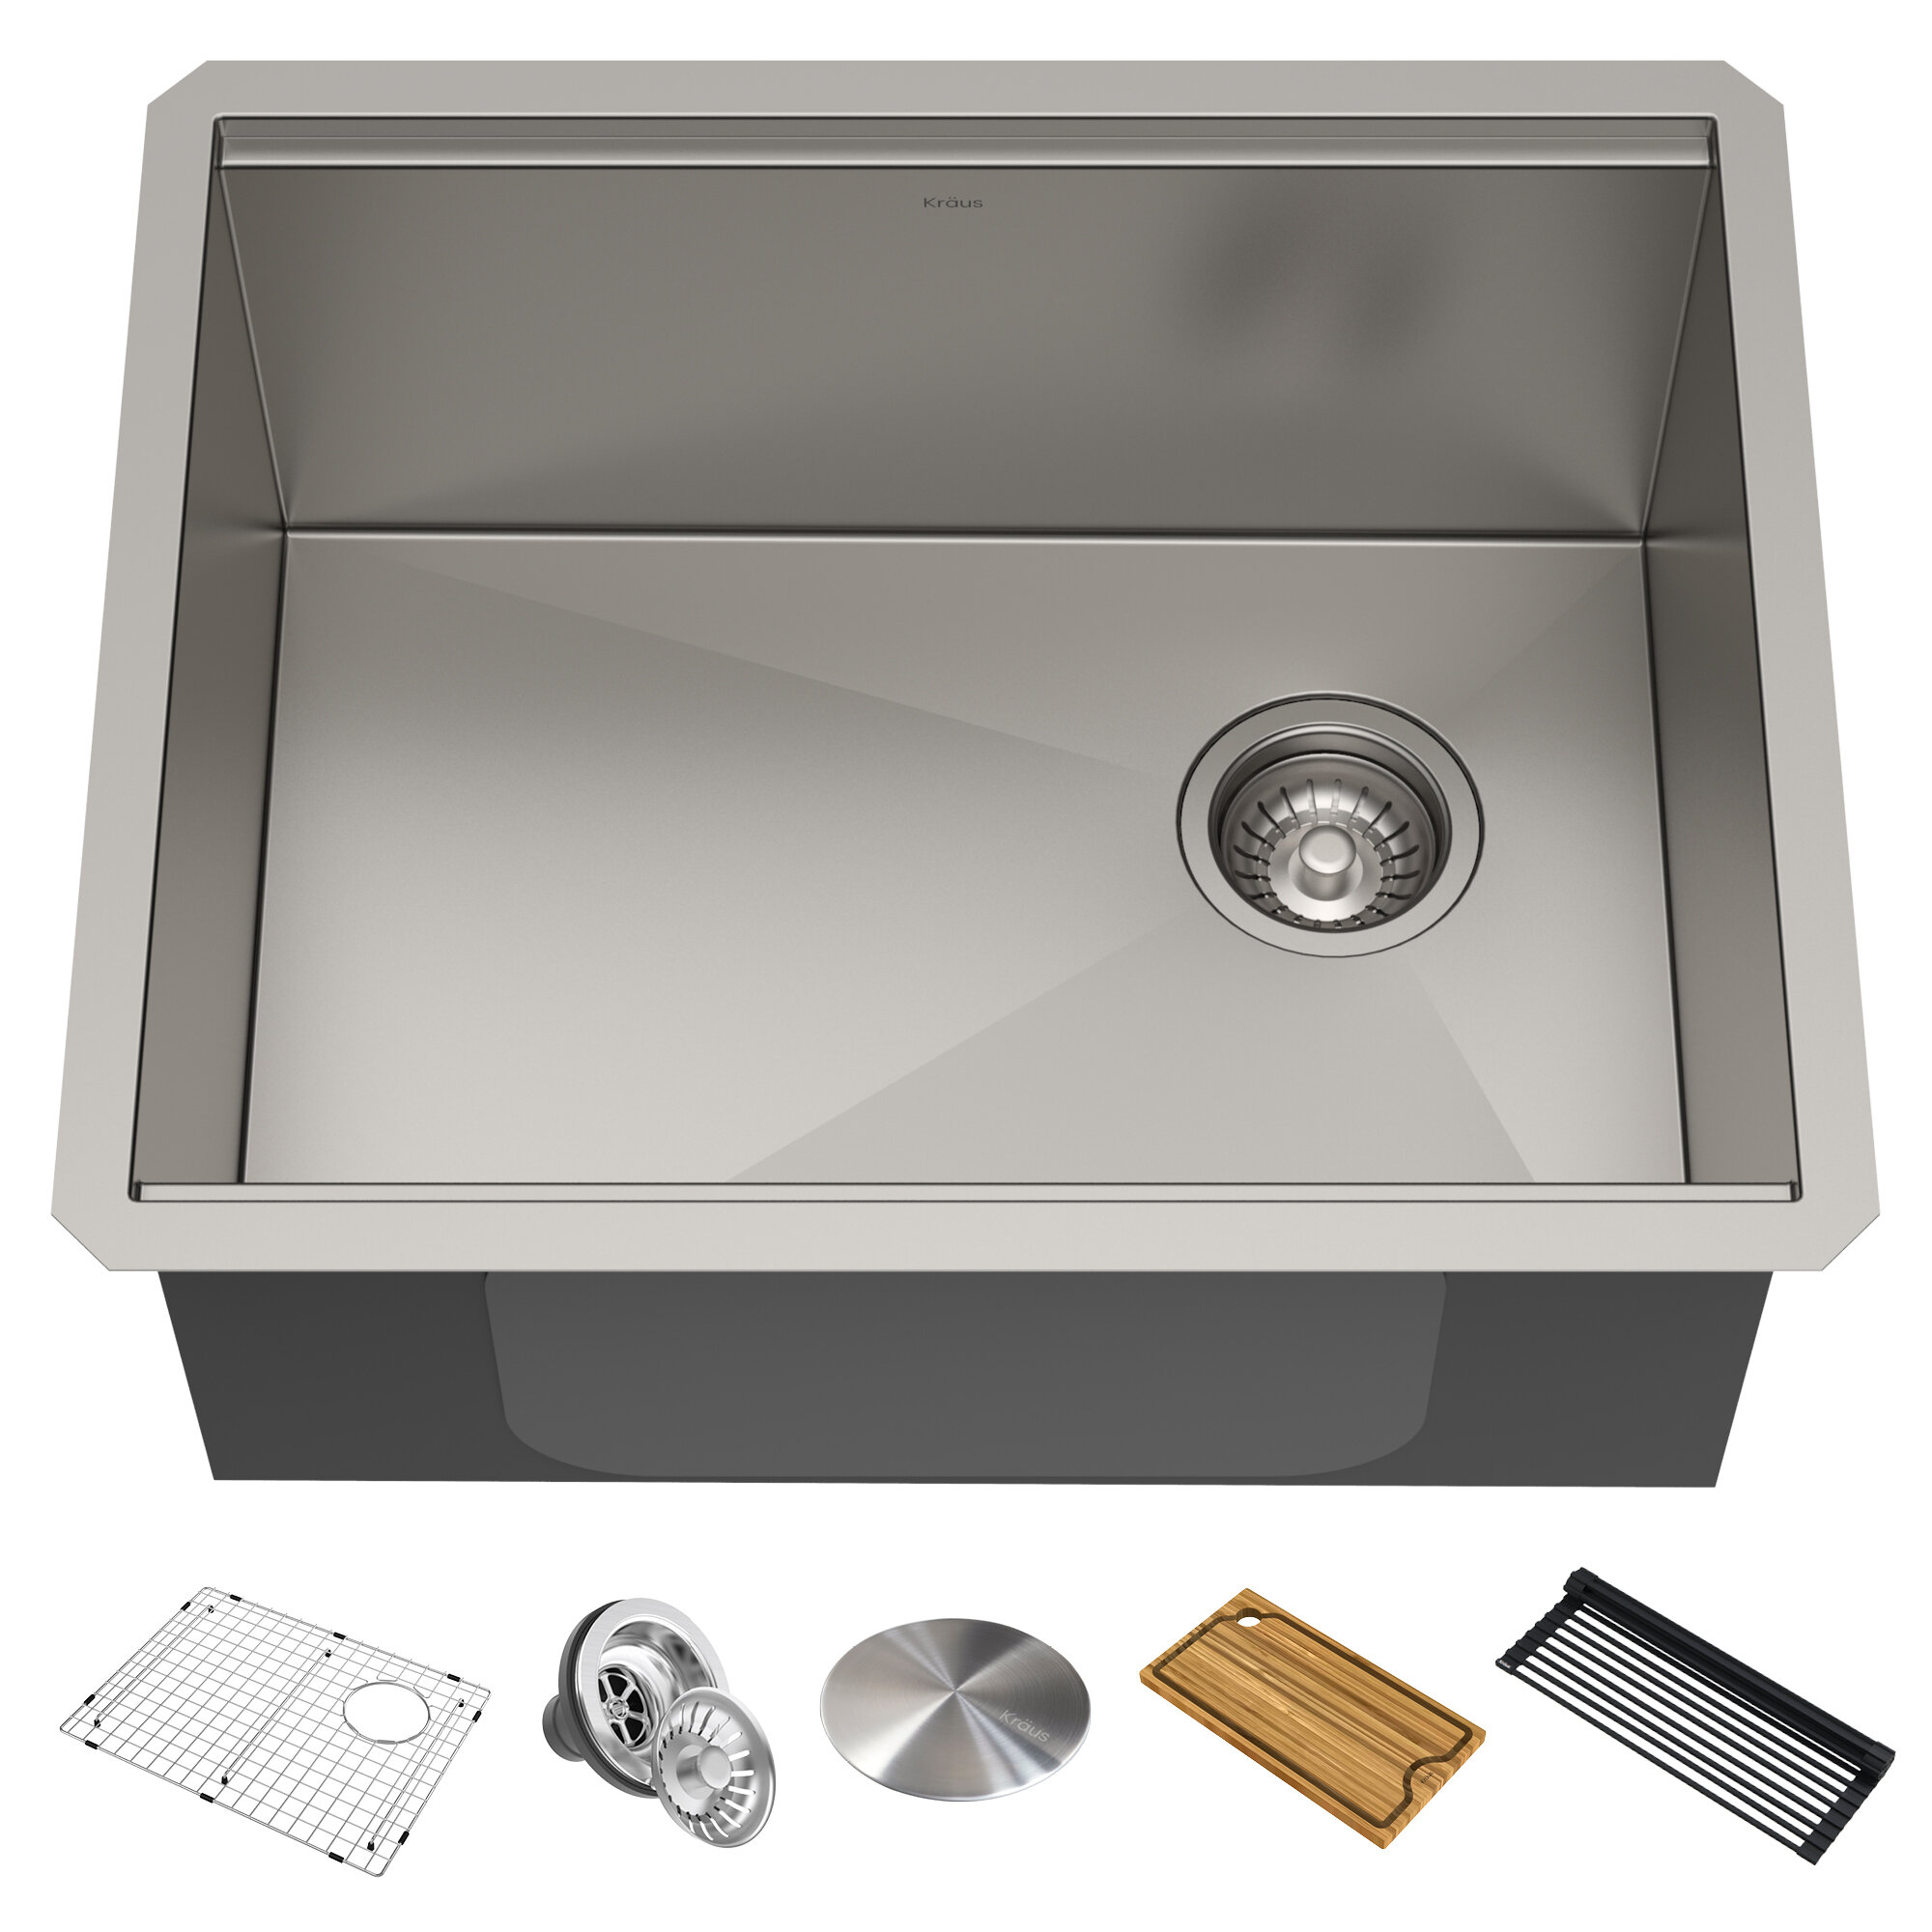 https://assets.wfcdn.com/im/35673290/compr-r85/8205/82051970/kraus-kore-workstation-23-inch-l-undermount-16-gauge-single-bowl-stainless-steel-kitchen-sink.jpg